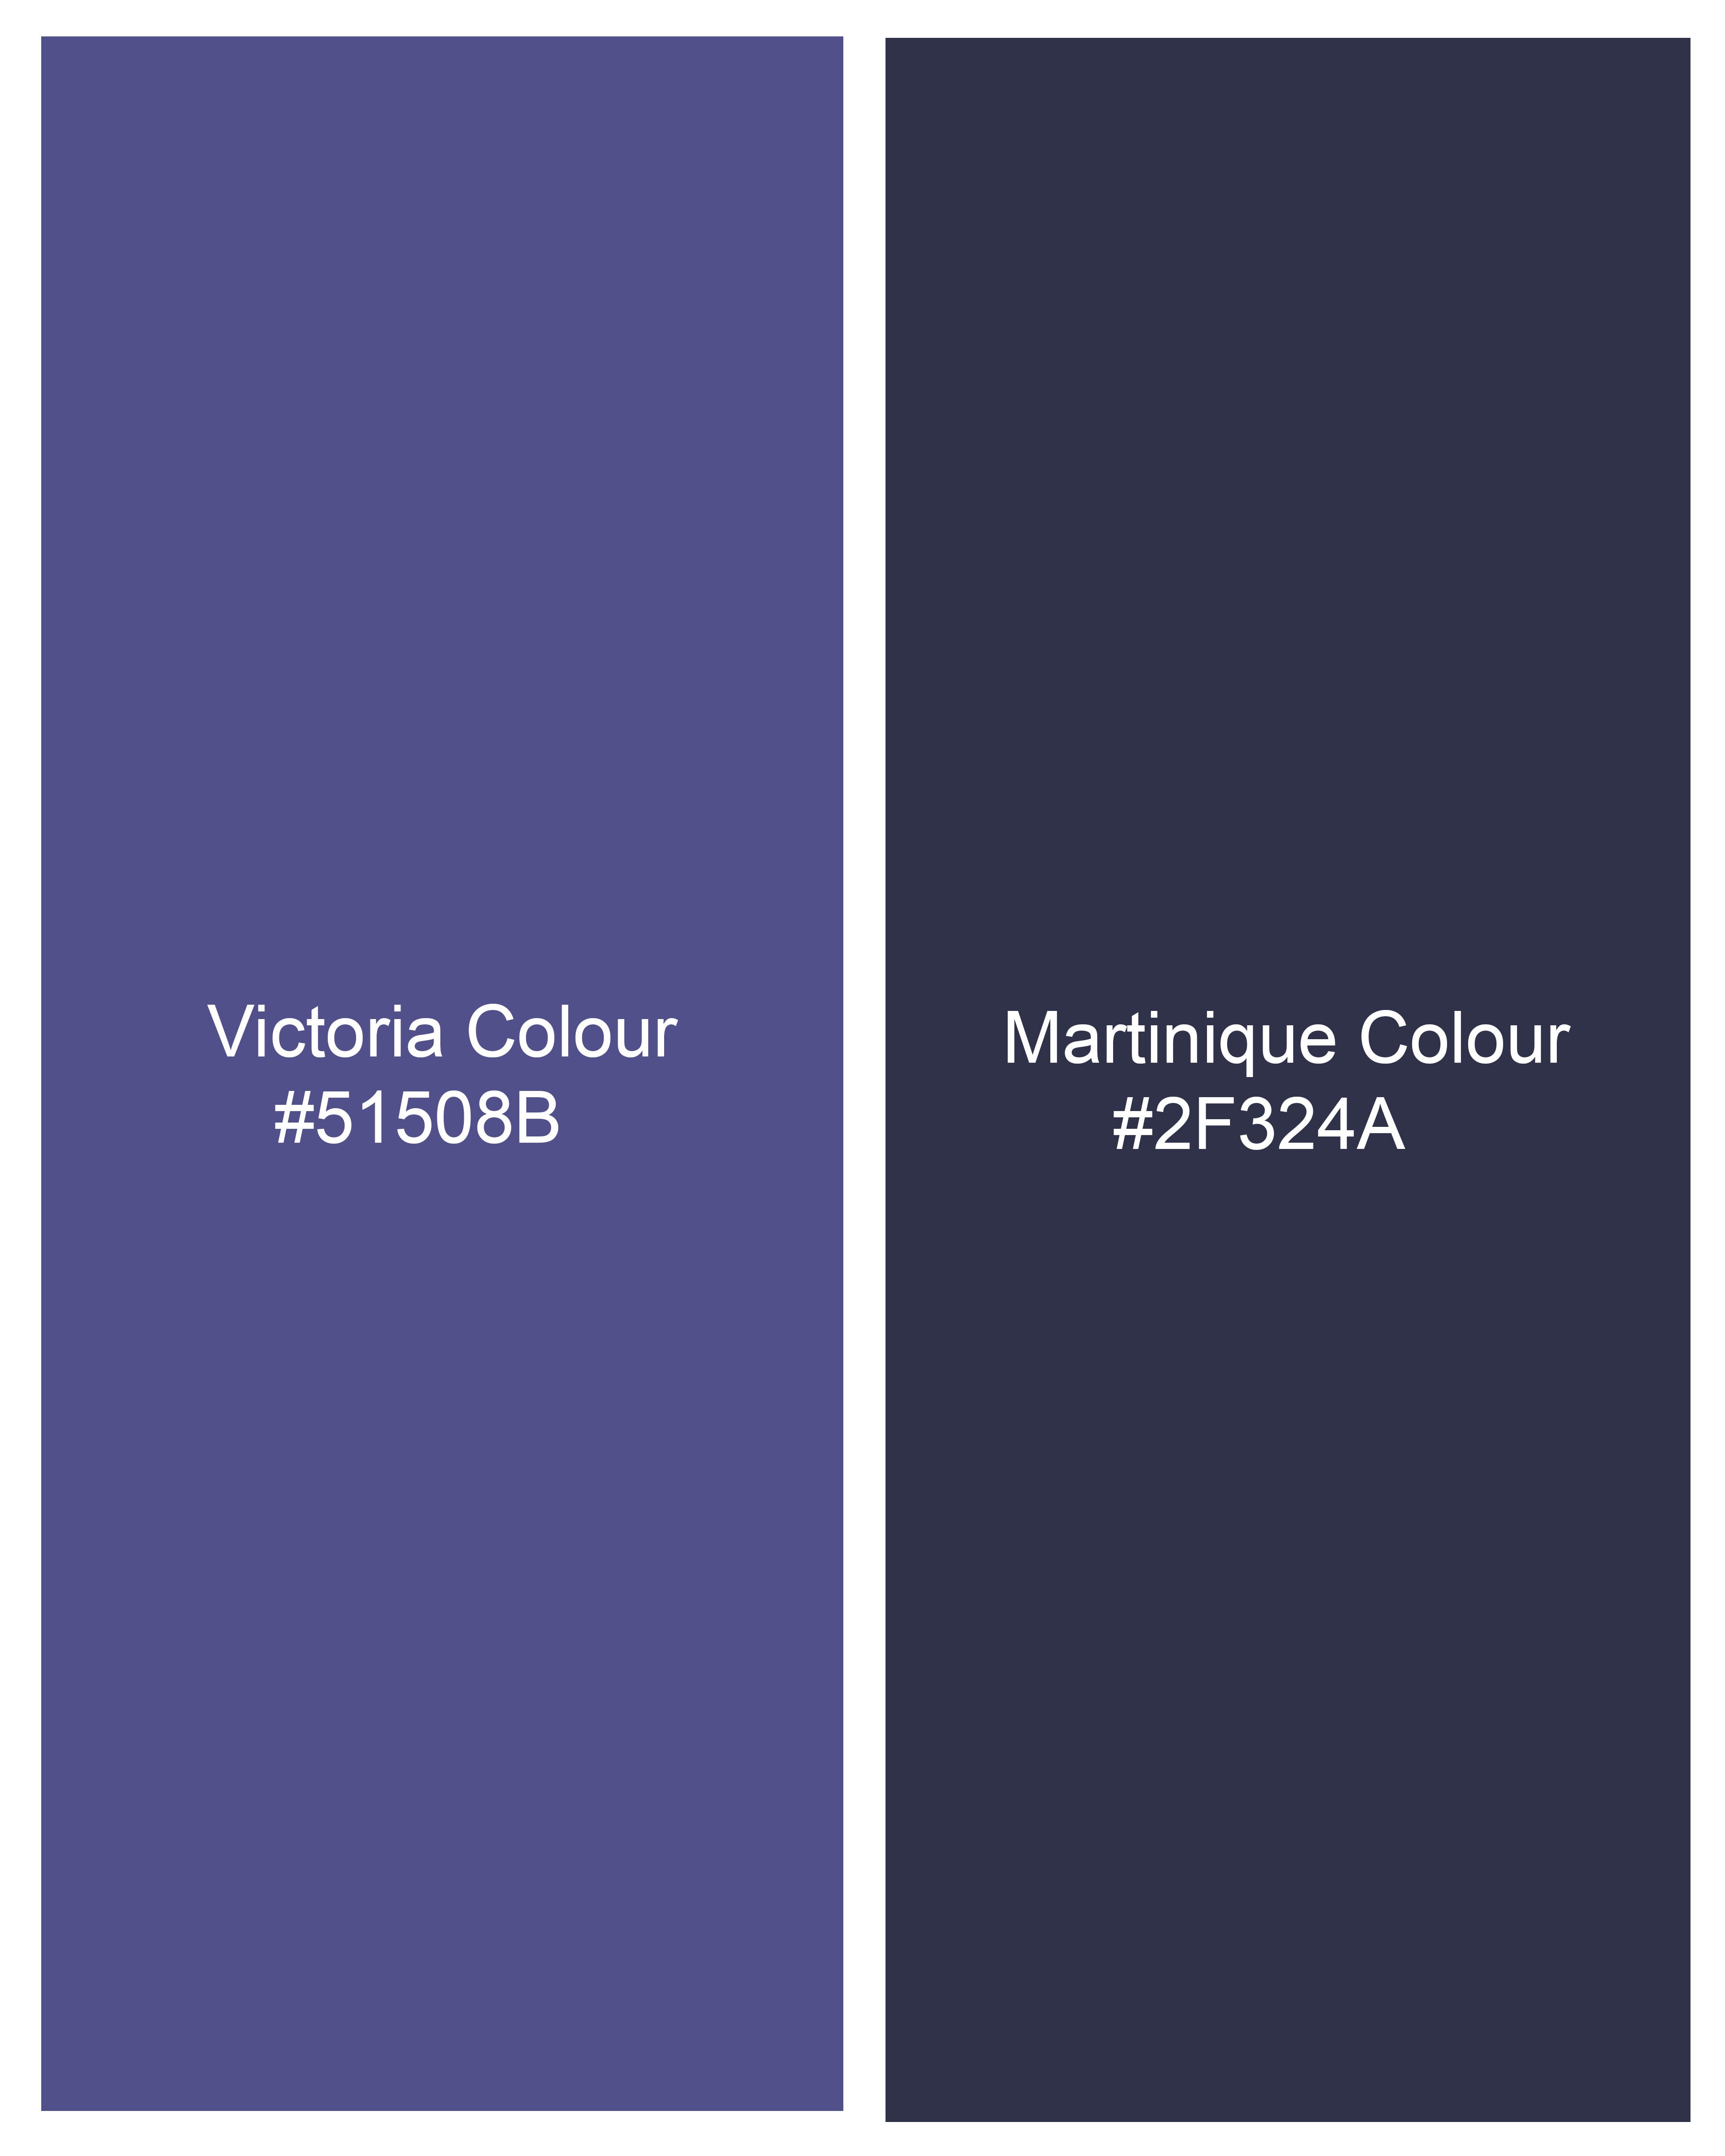 Victoria Blue Gingham Checkered Waistcoat V2494-36, V2494-38, V2494-40, V2494-42, V2494-44, V2494-46, V2494-48, V2494-50, V2494-52, V2494-54, V2494-56, V2494-58, V2494-60